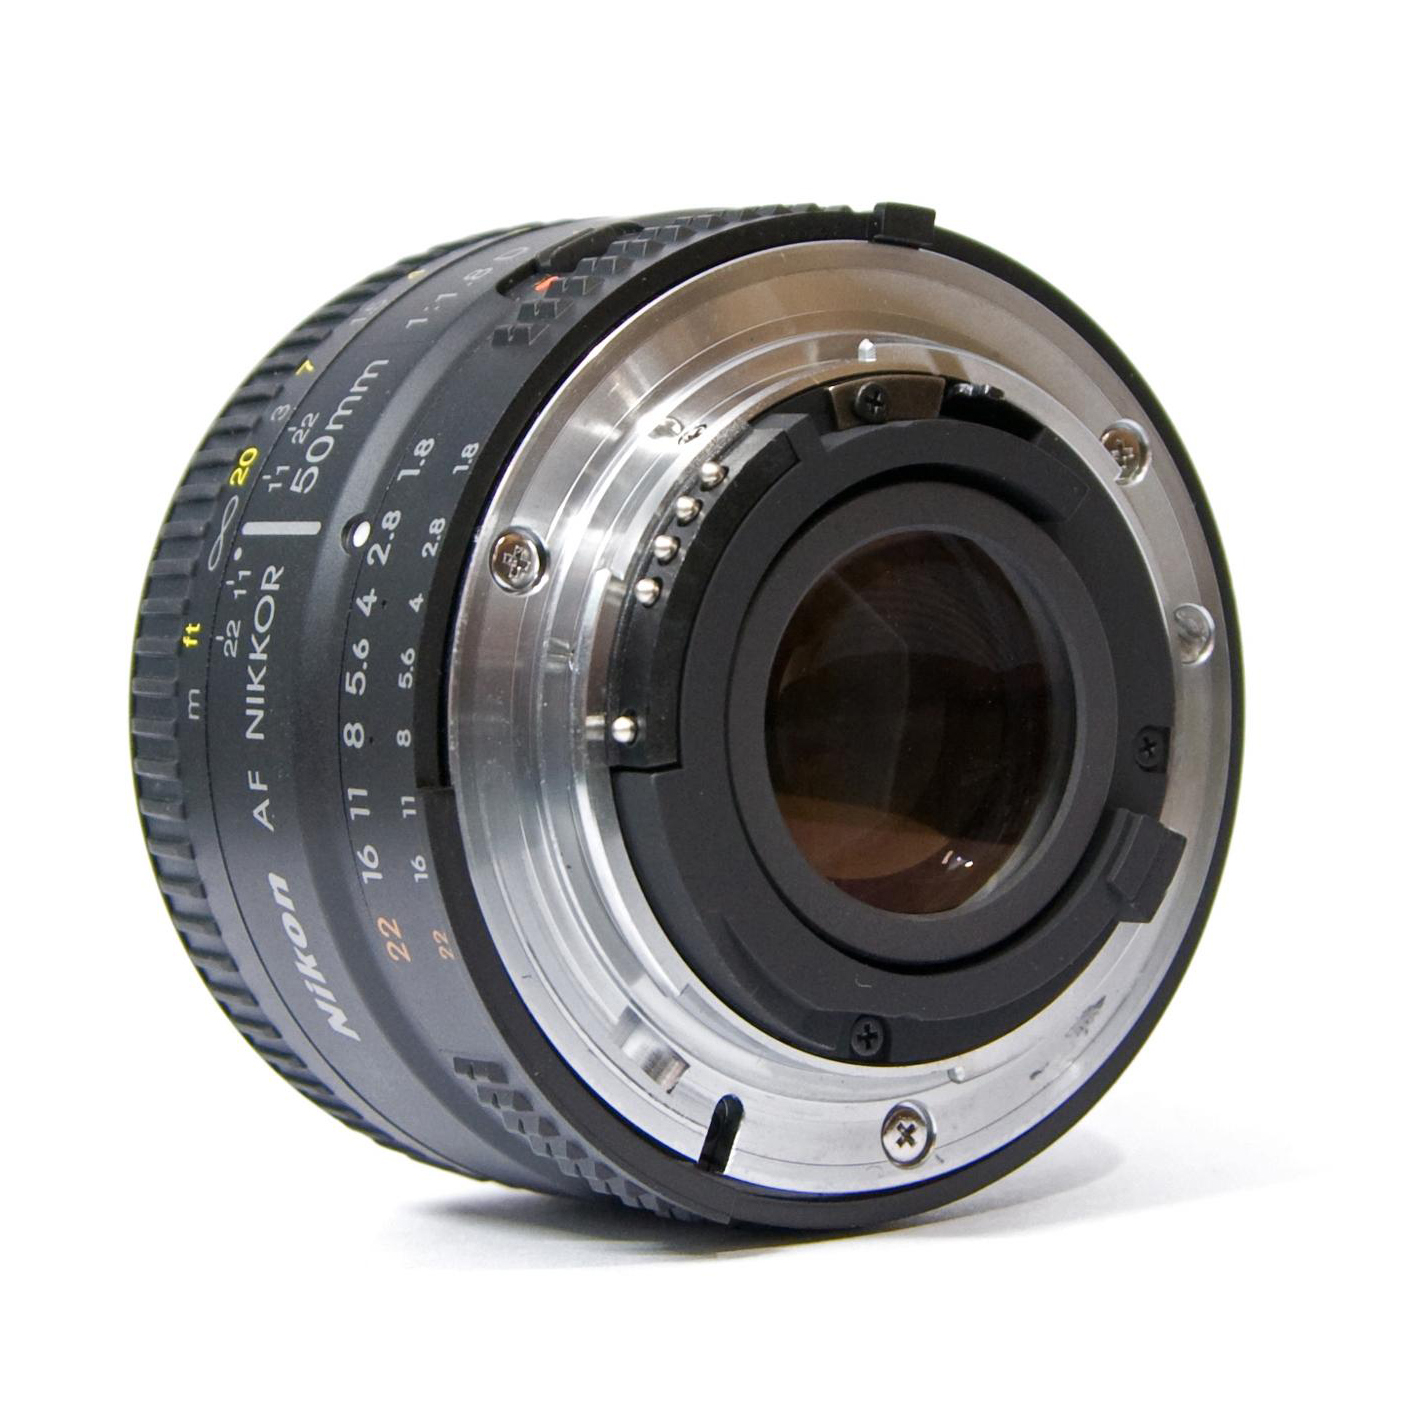 Nikon 50mm f/1.8D AF Nikkor